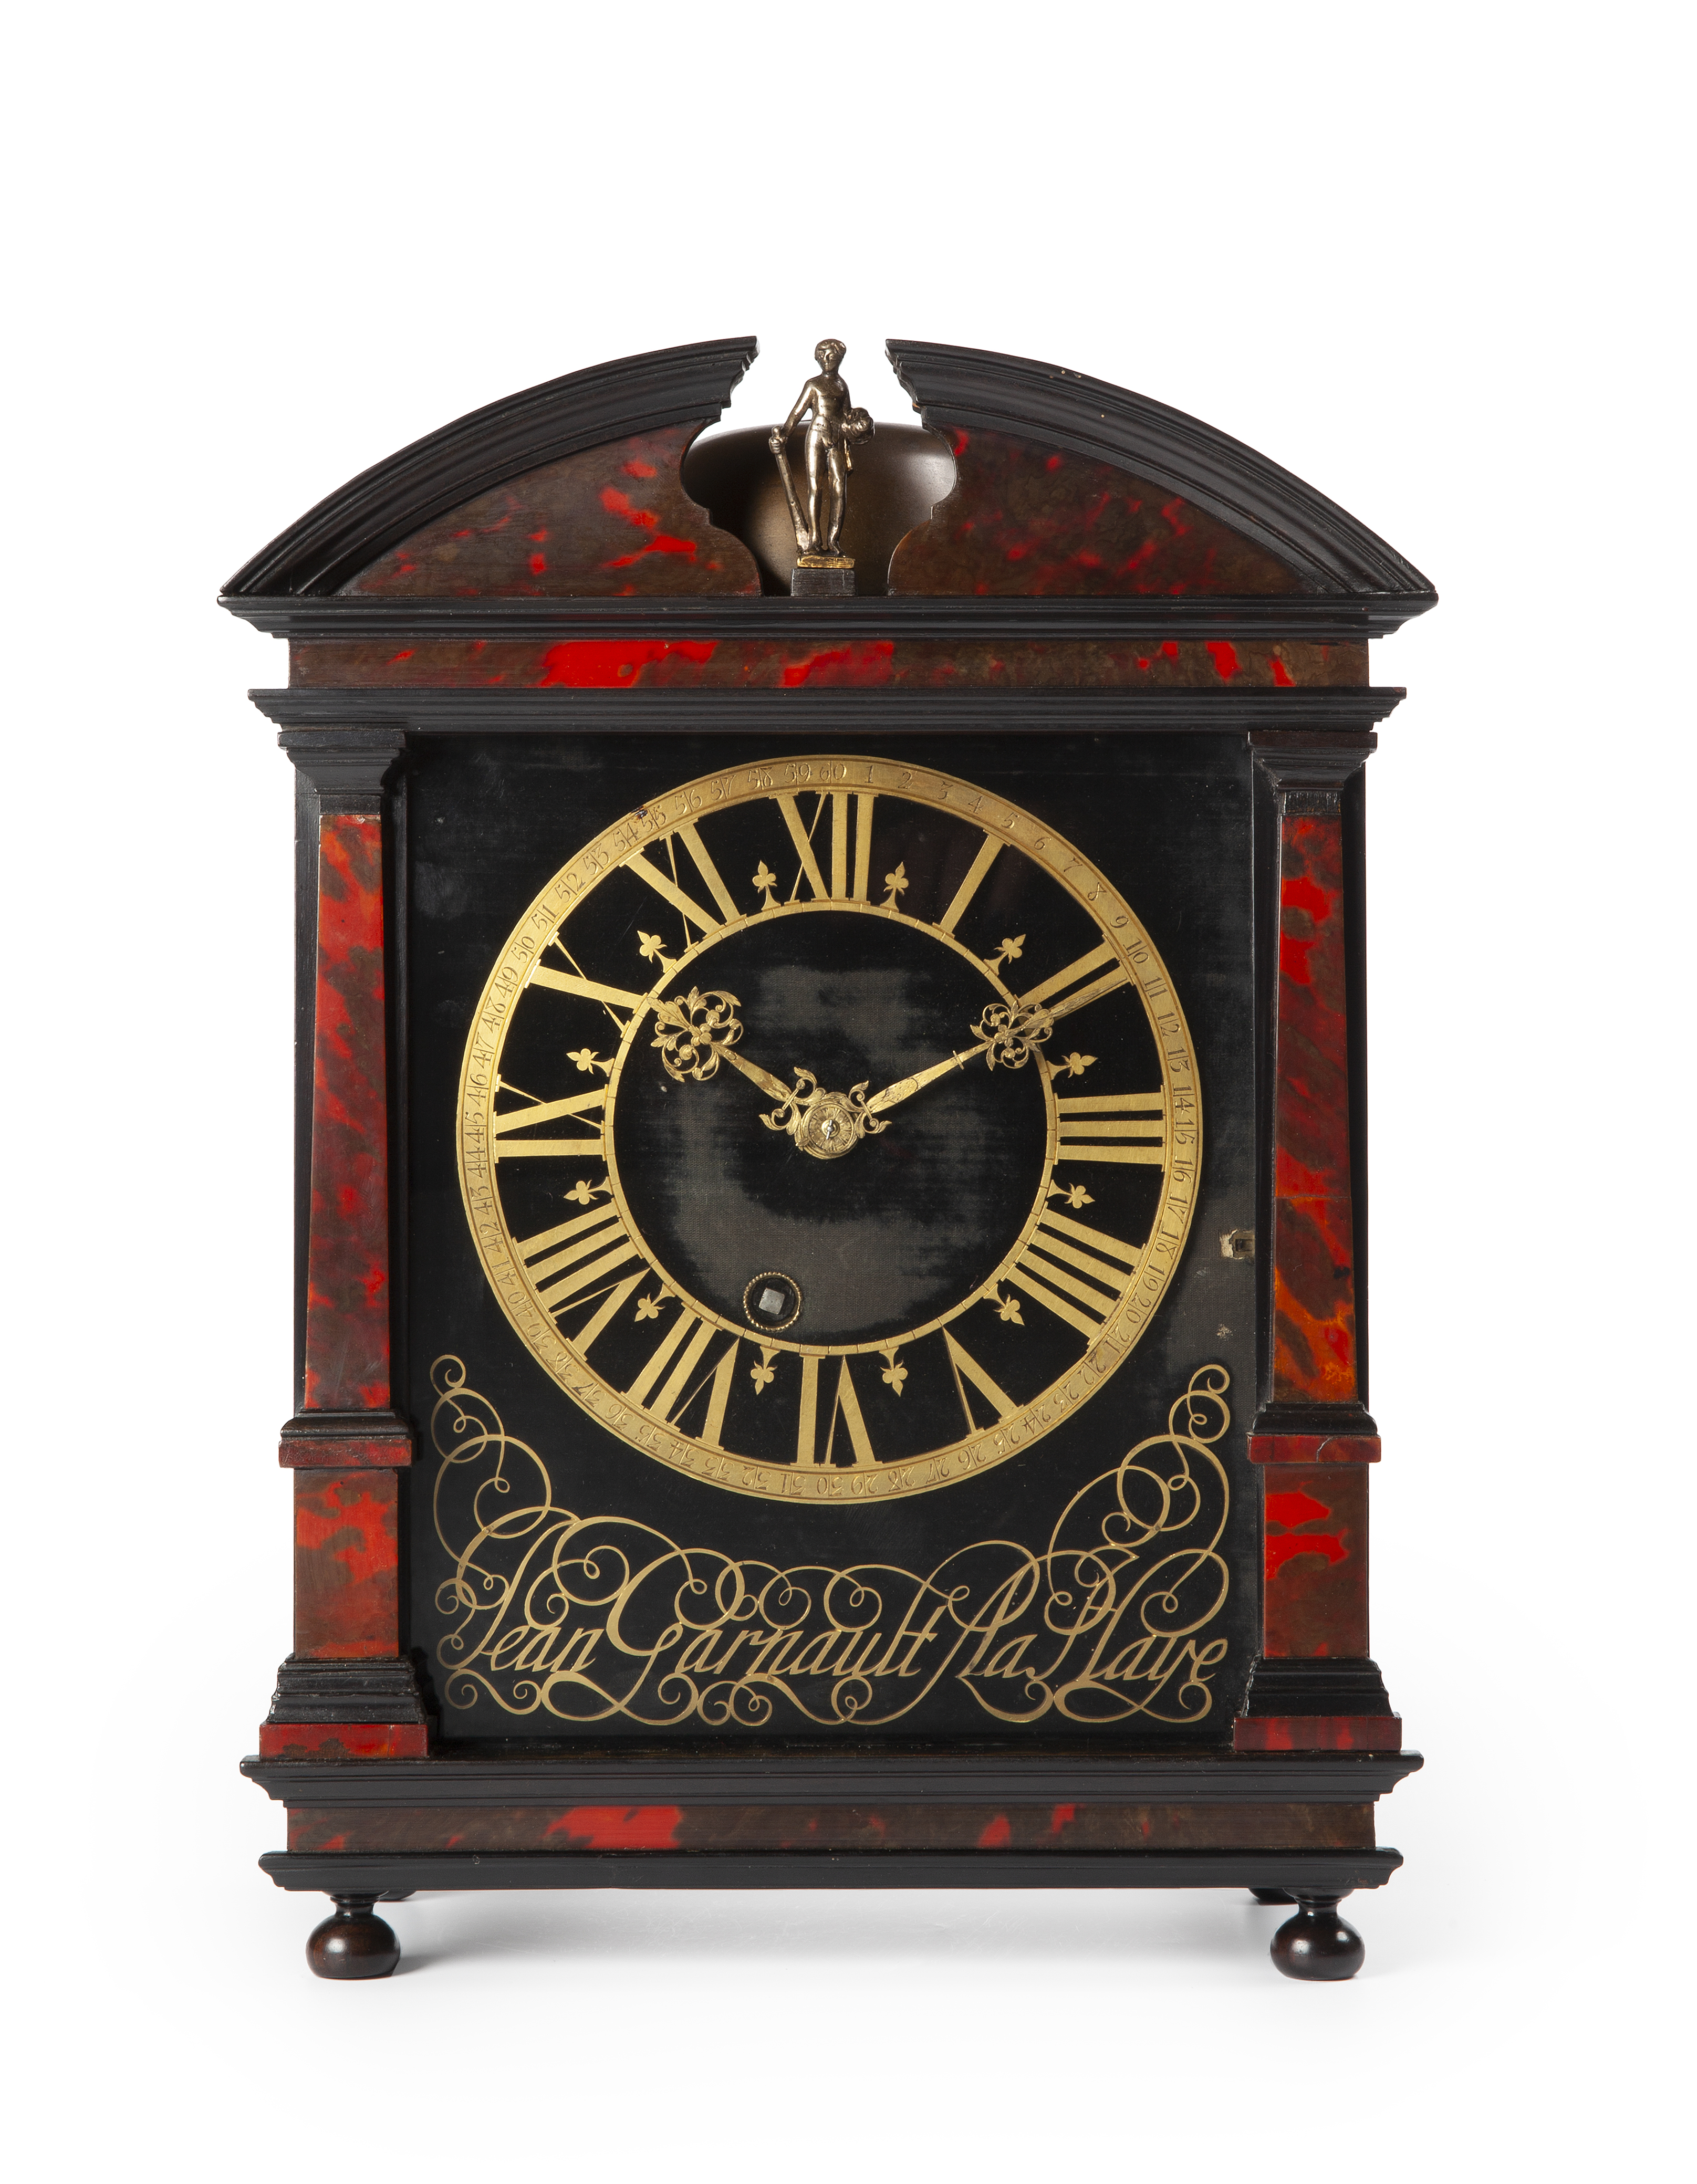 Leerling Onafhankelijk compromis Collectie antieke klokken collection antique clock clocks